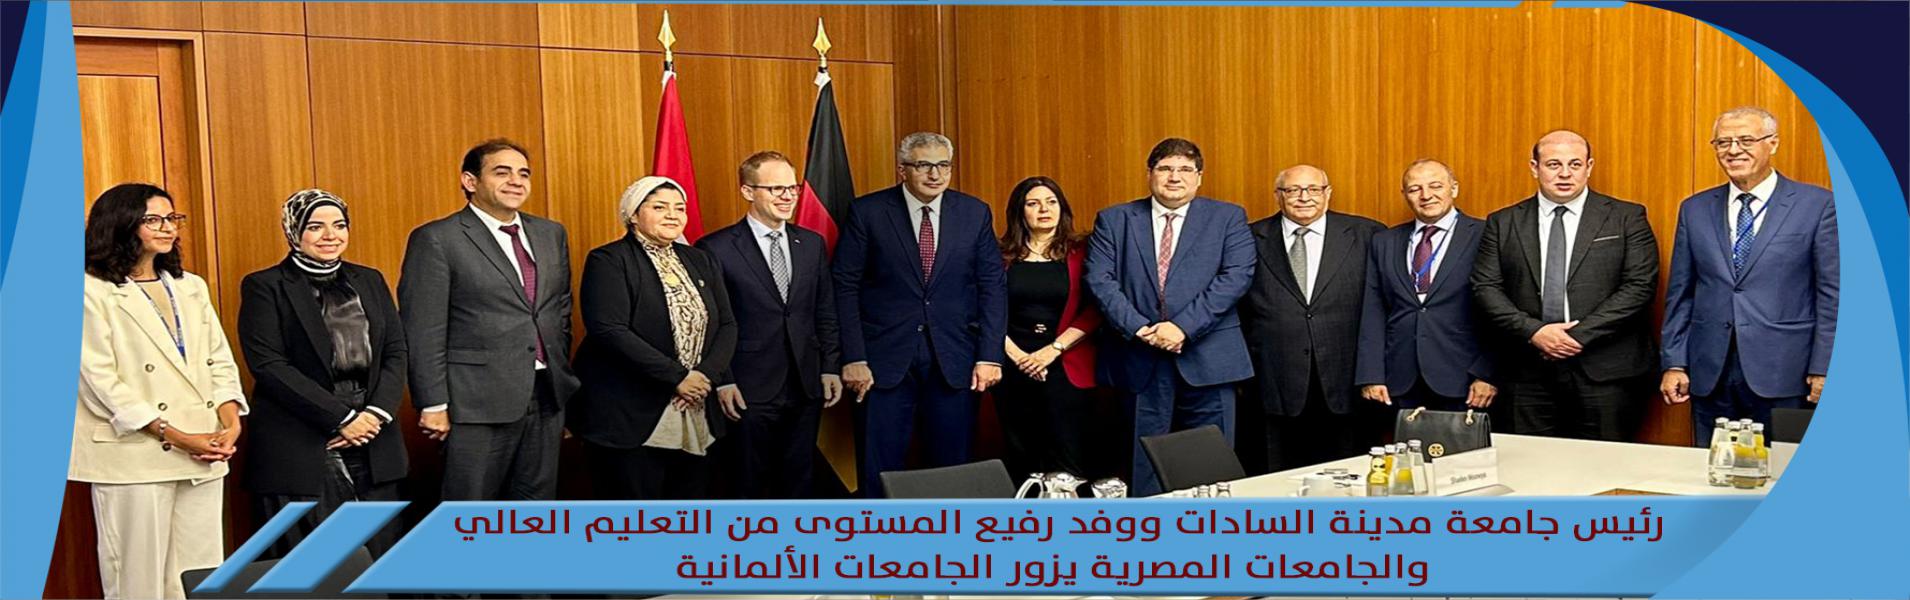 رئيس جامعة مدينة السادات ووفد رفيع المستوى من التعليم العالي والجامعات المصرية يزور الجامعات الألمانية